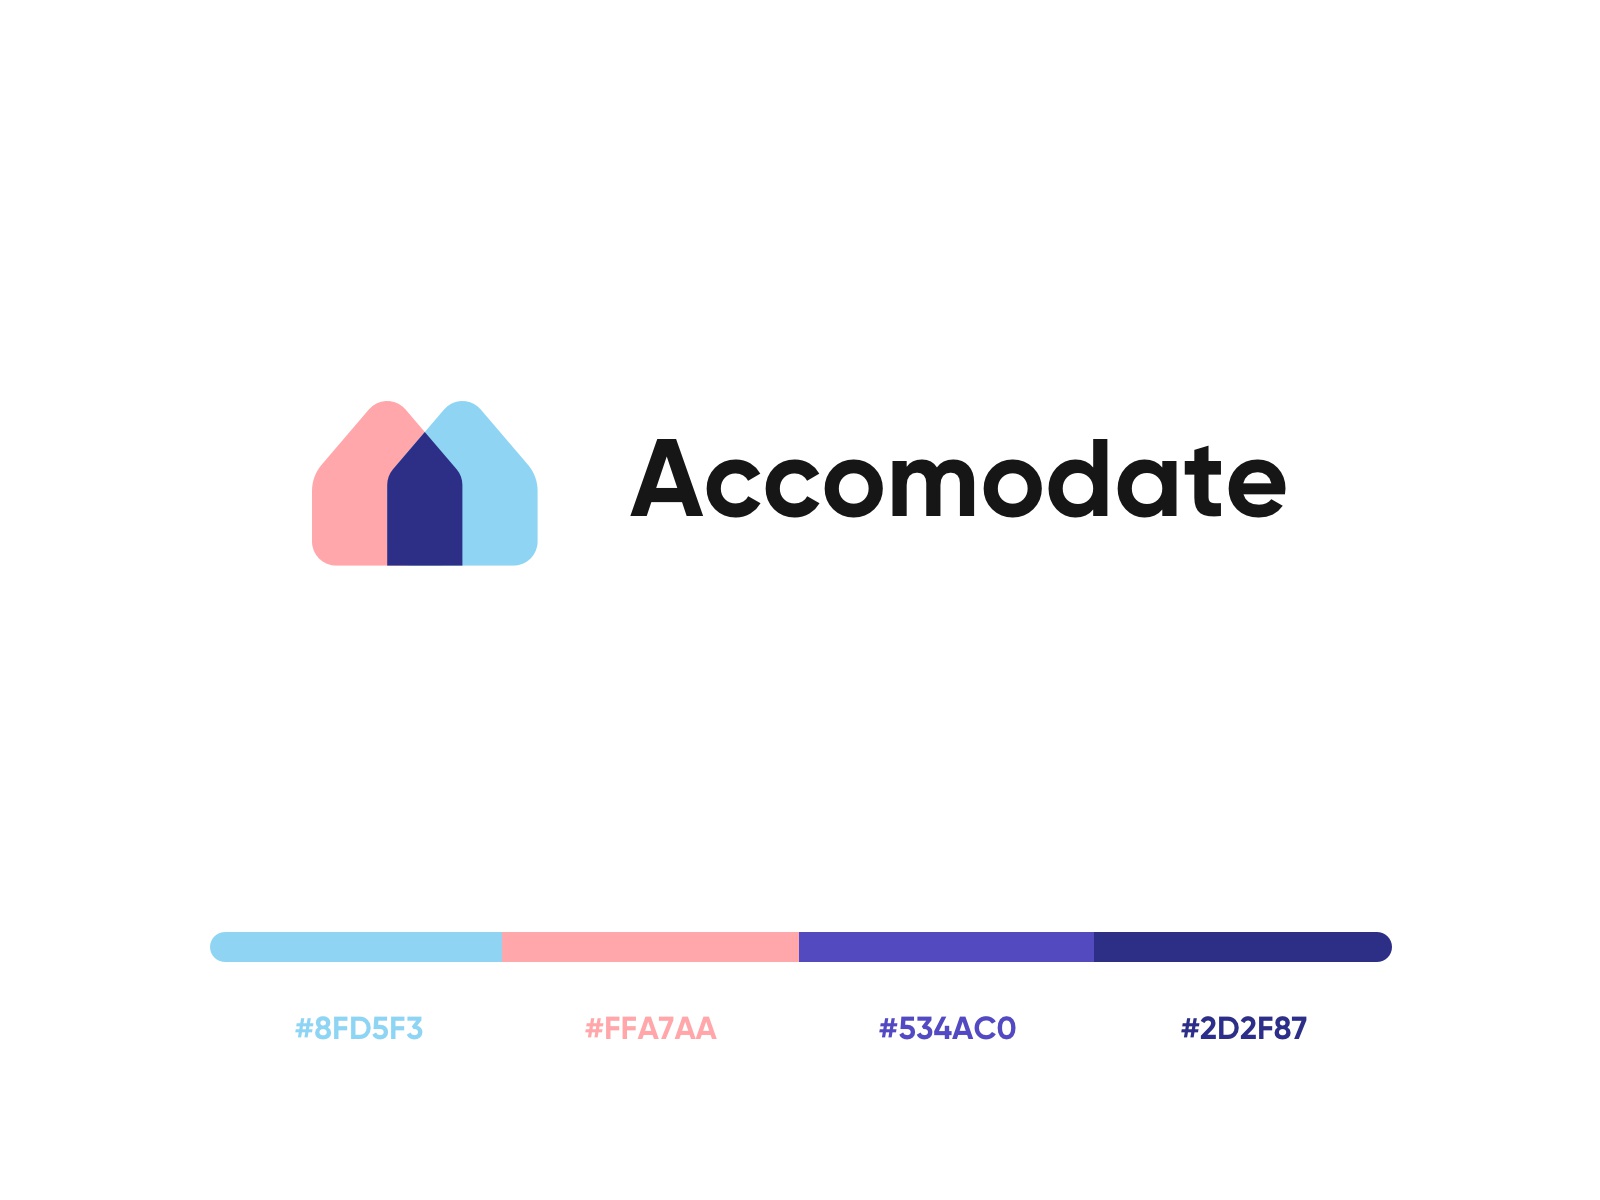 Accomodate - Rental home finder mobile application UI